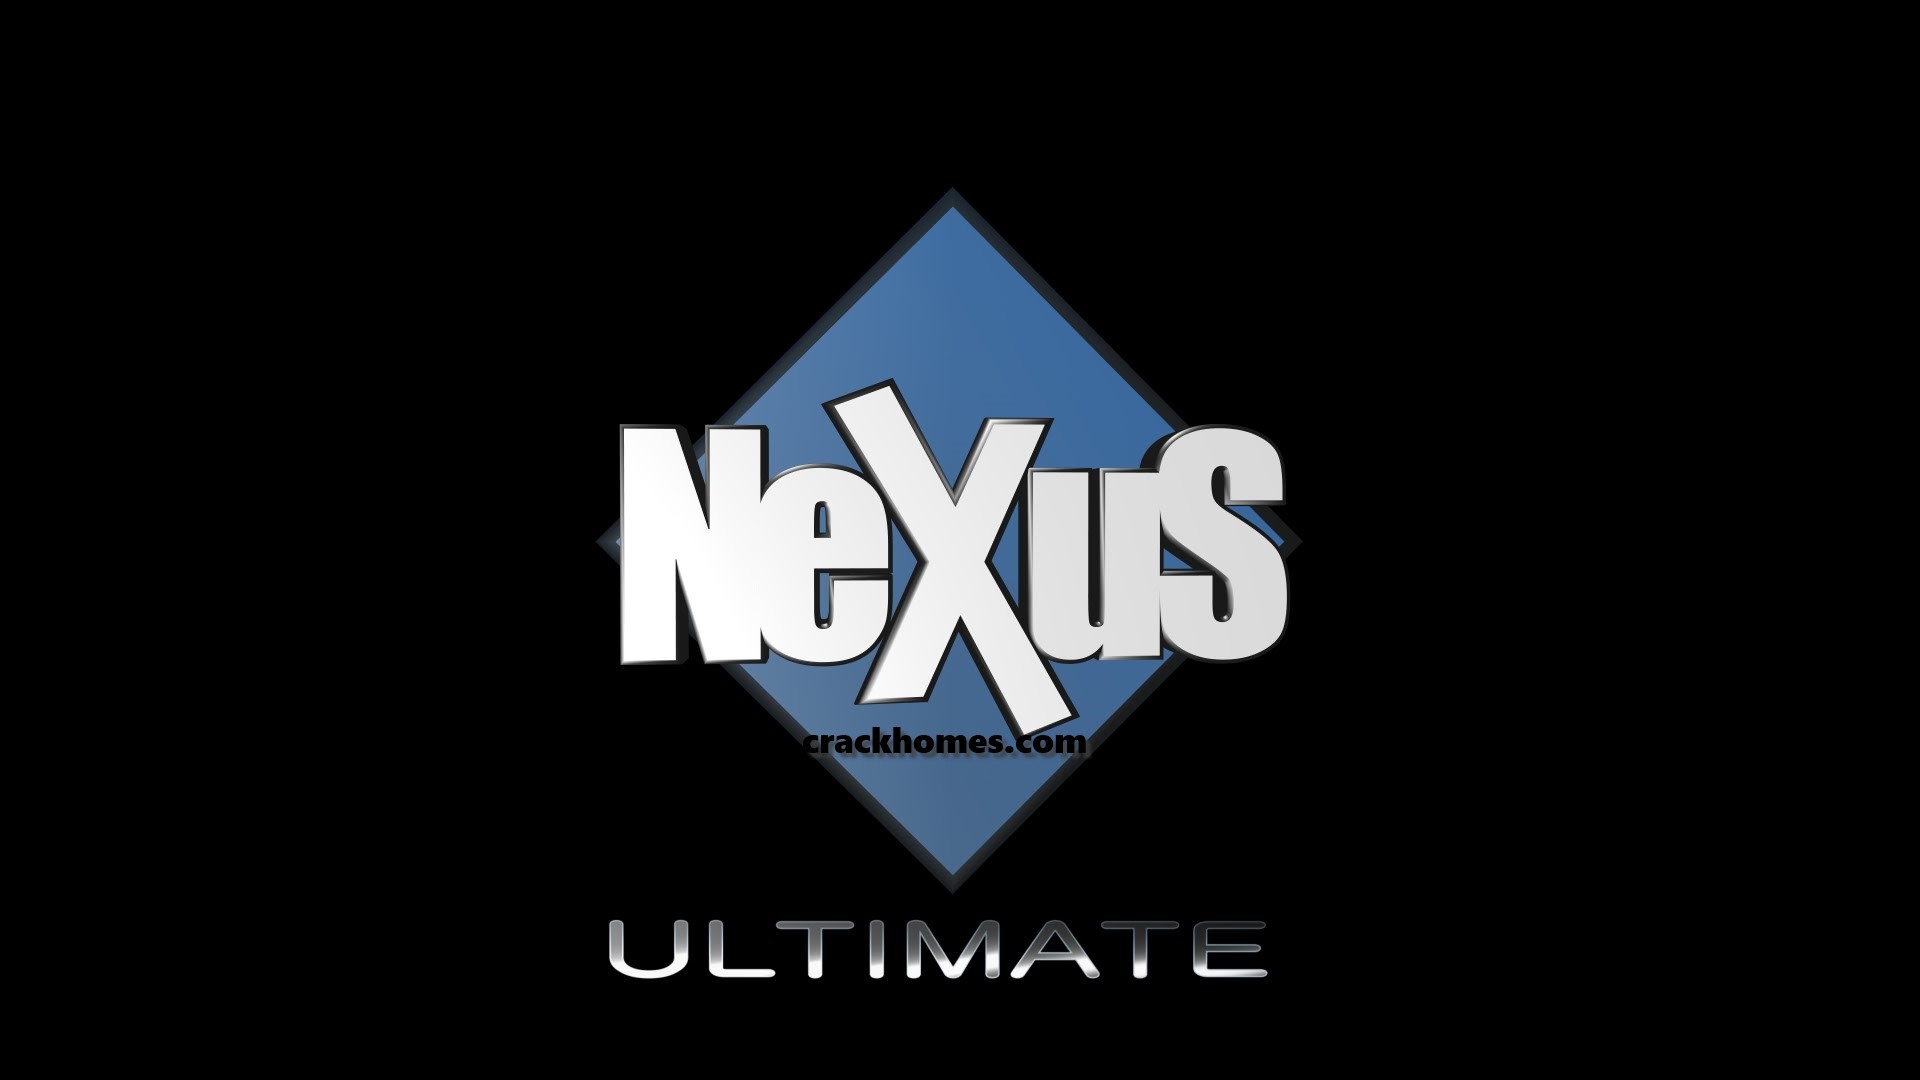 refx nexus 2.7.4 crack torrent